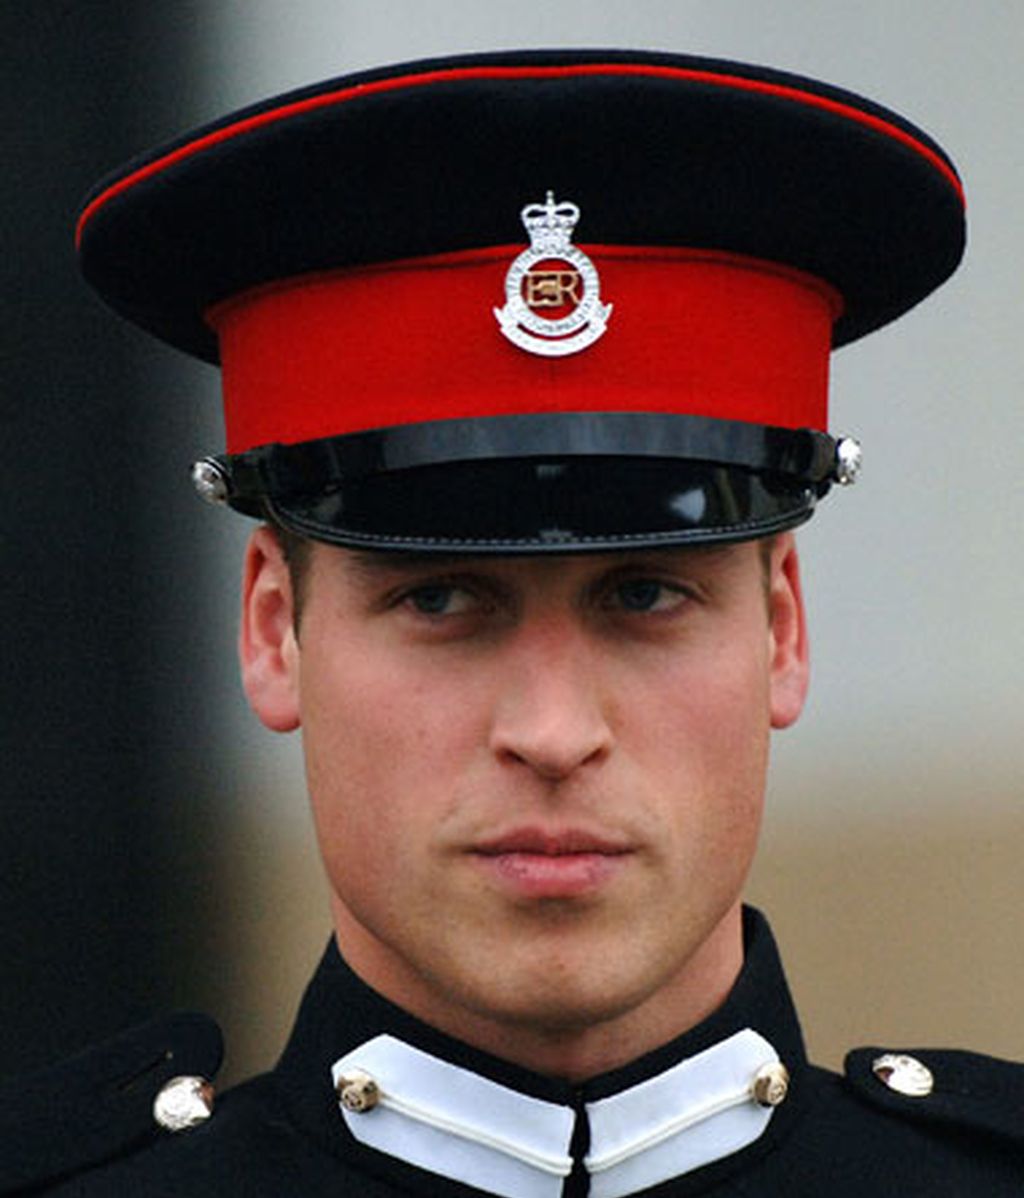 El príncipe Guillermo y Kate Middleton también tienen pasado